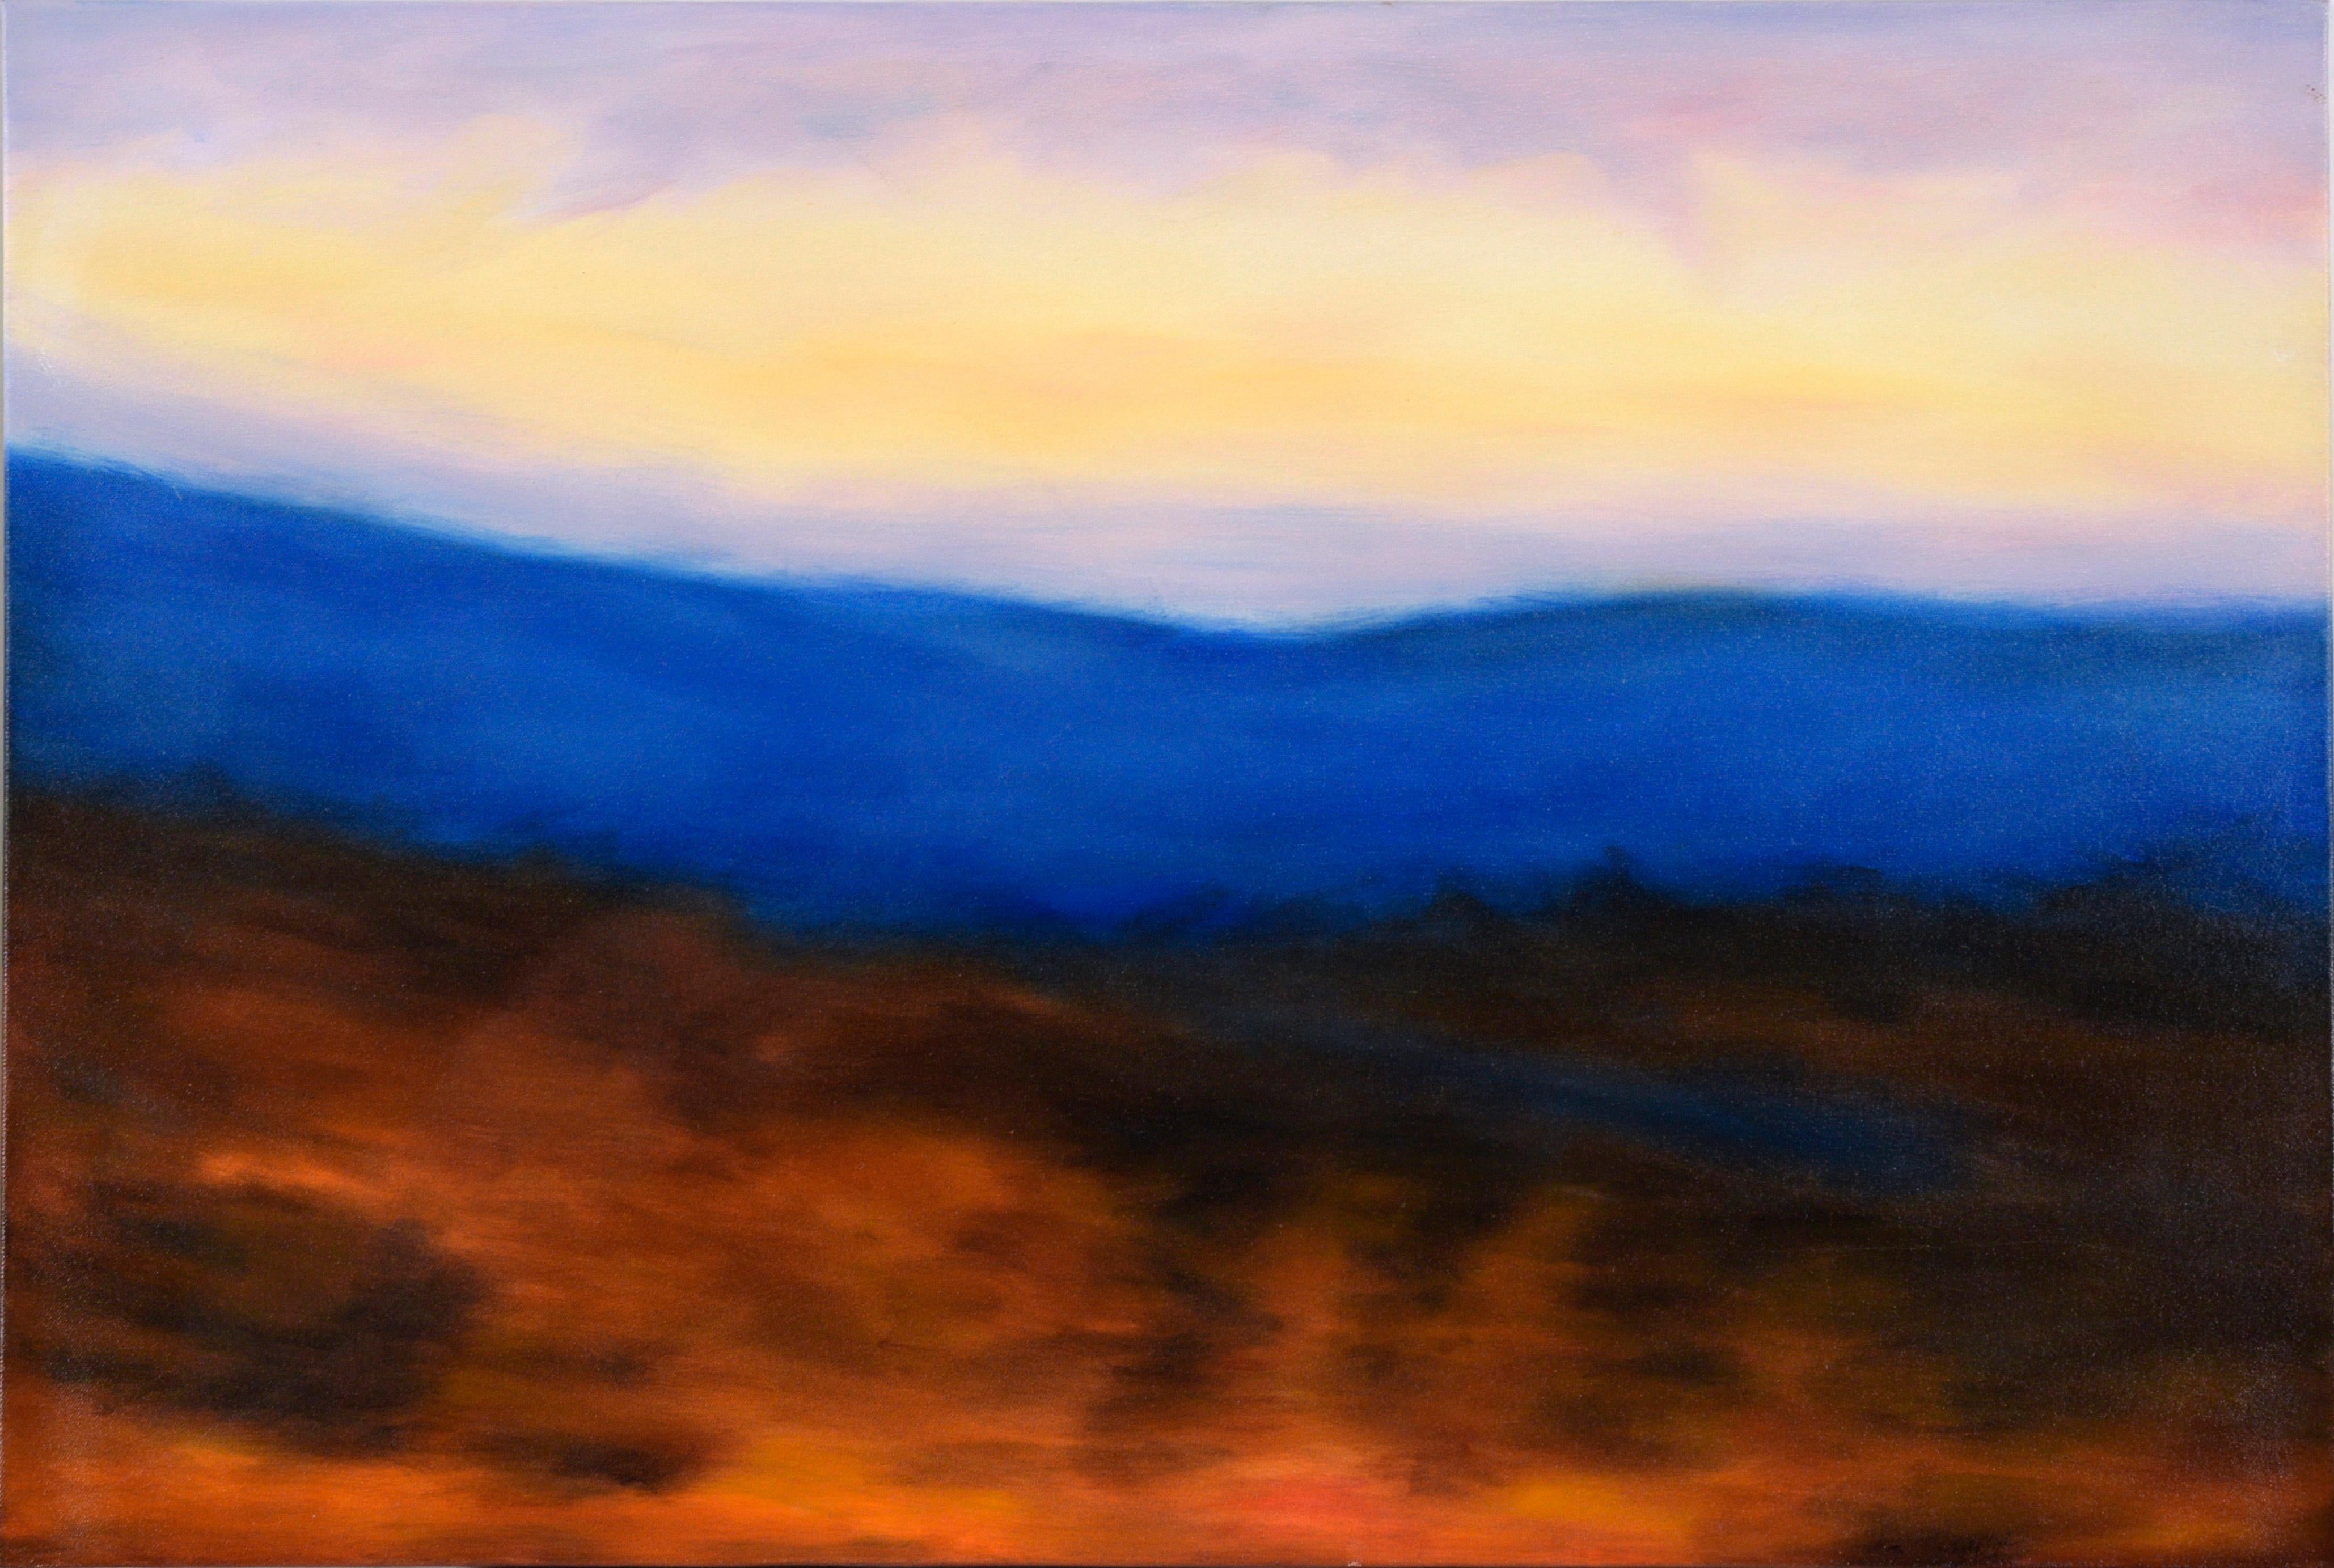 Landscape Painting Kelly Cool Lucas - Paysage à l'huile sur toile Hazy Sunrise au-dessus de montagnes bleues